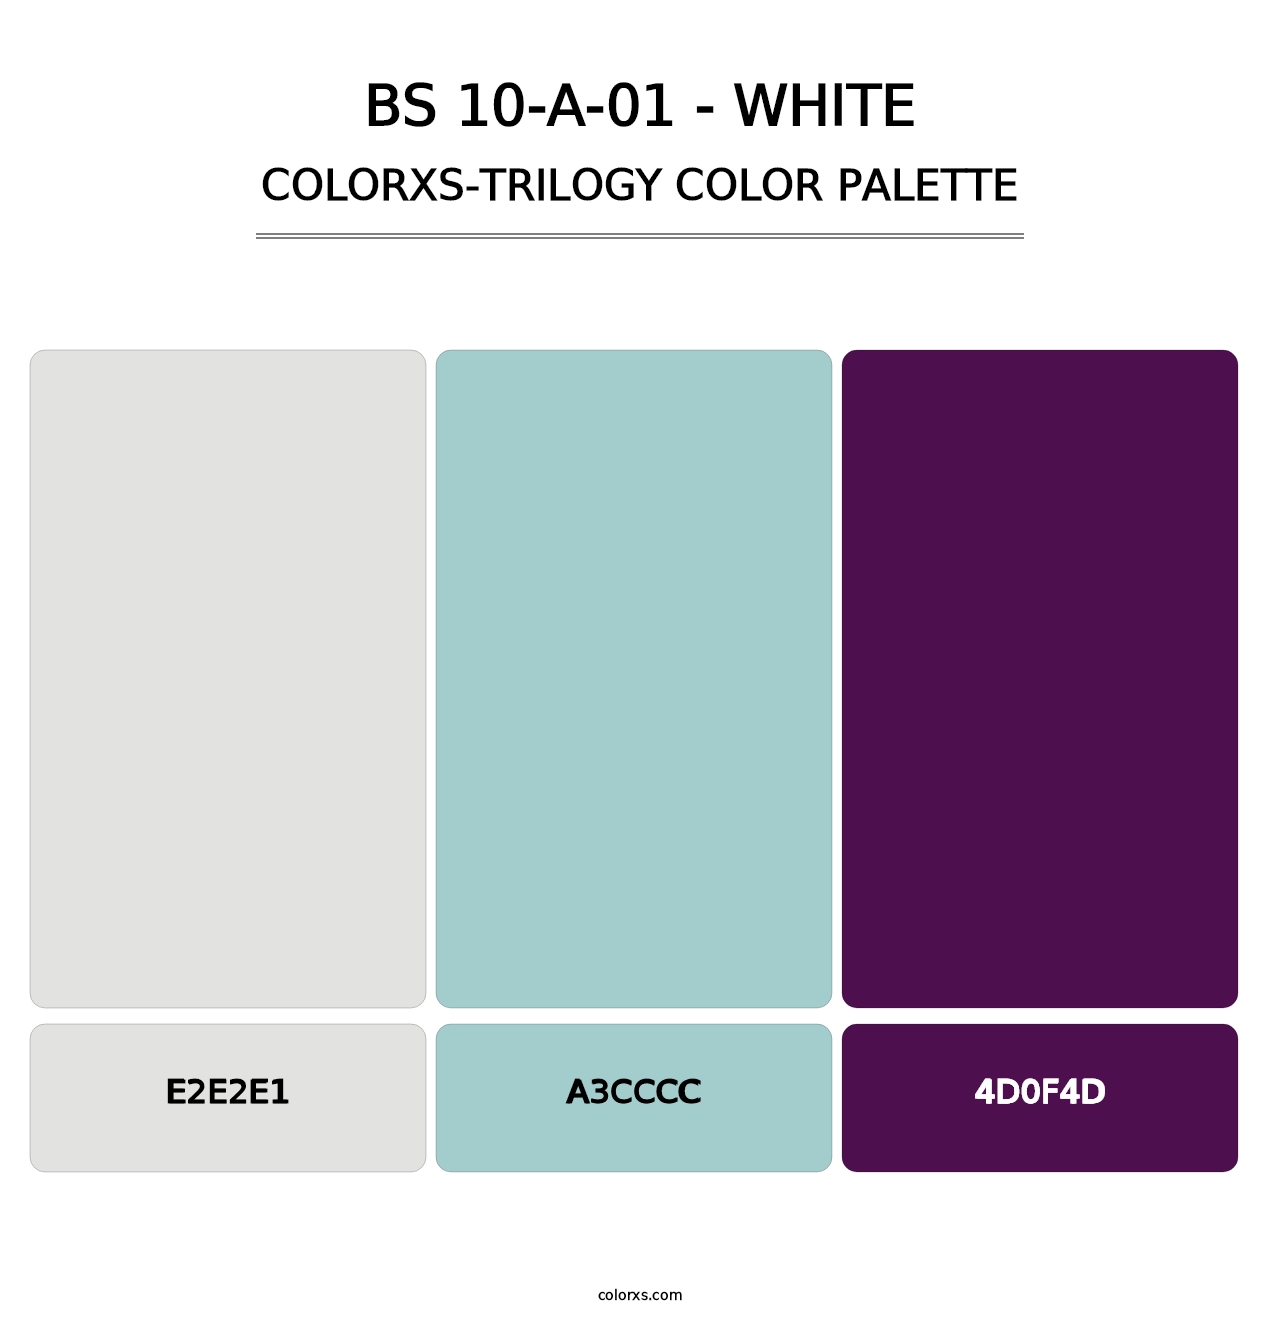 BS 10-A-01 - White - Colorxs Trilogy Palette